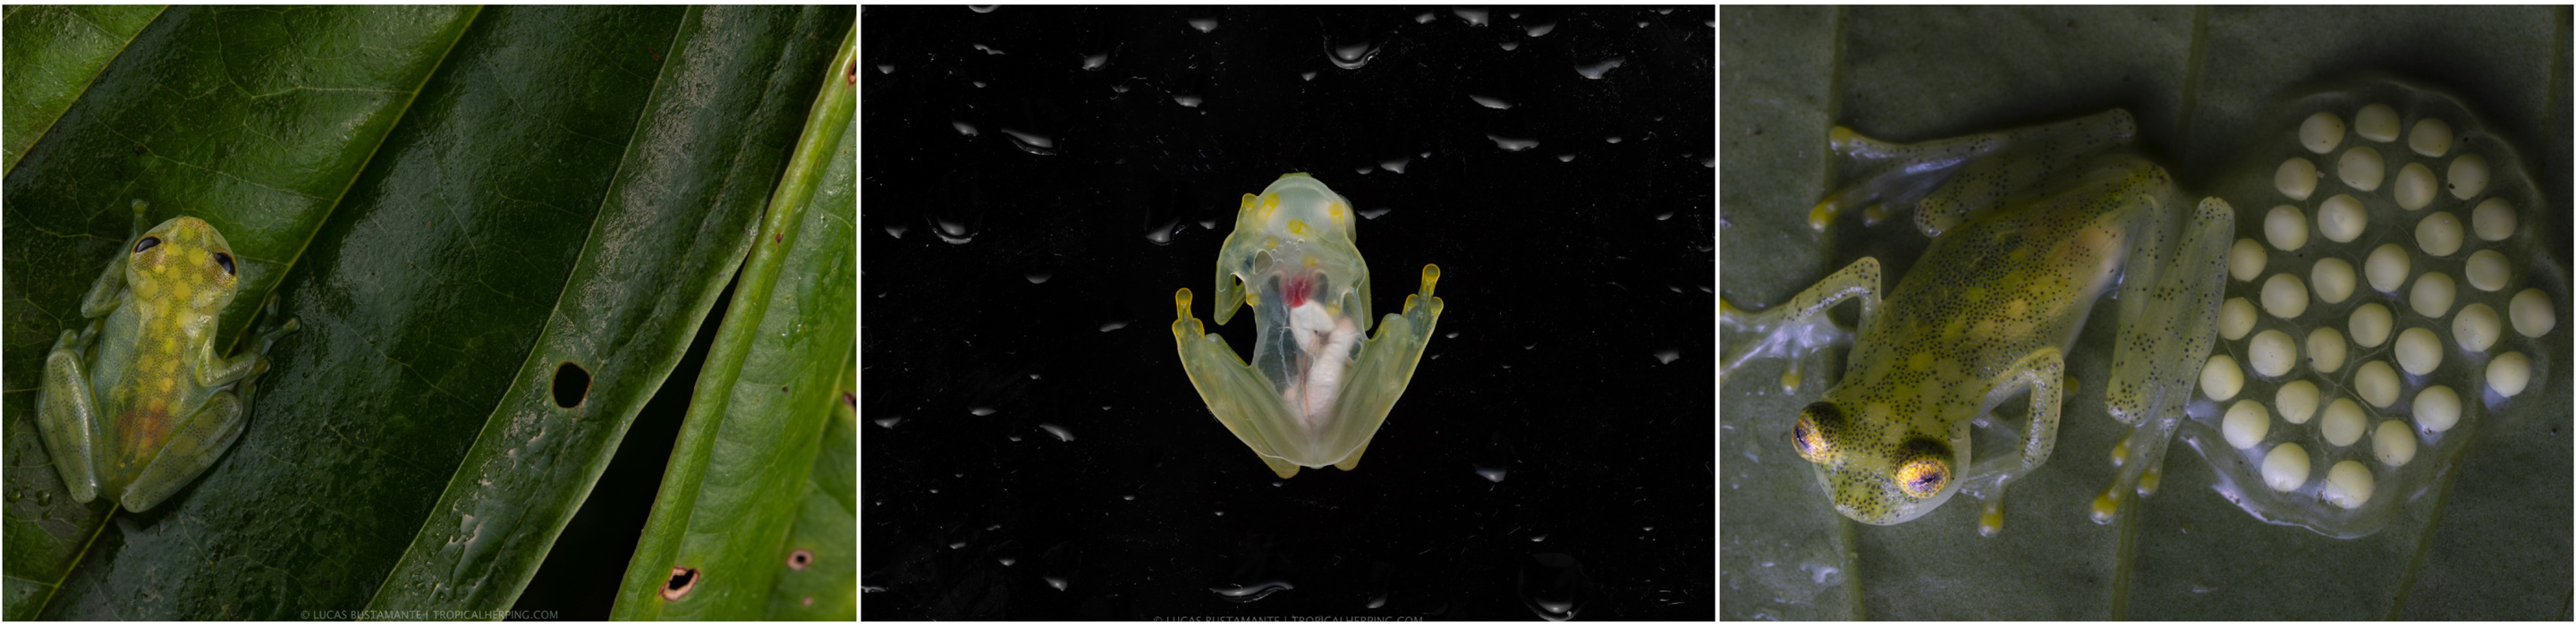 Mashpi glass frog